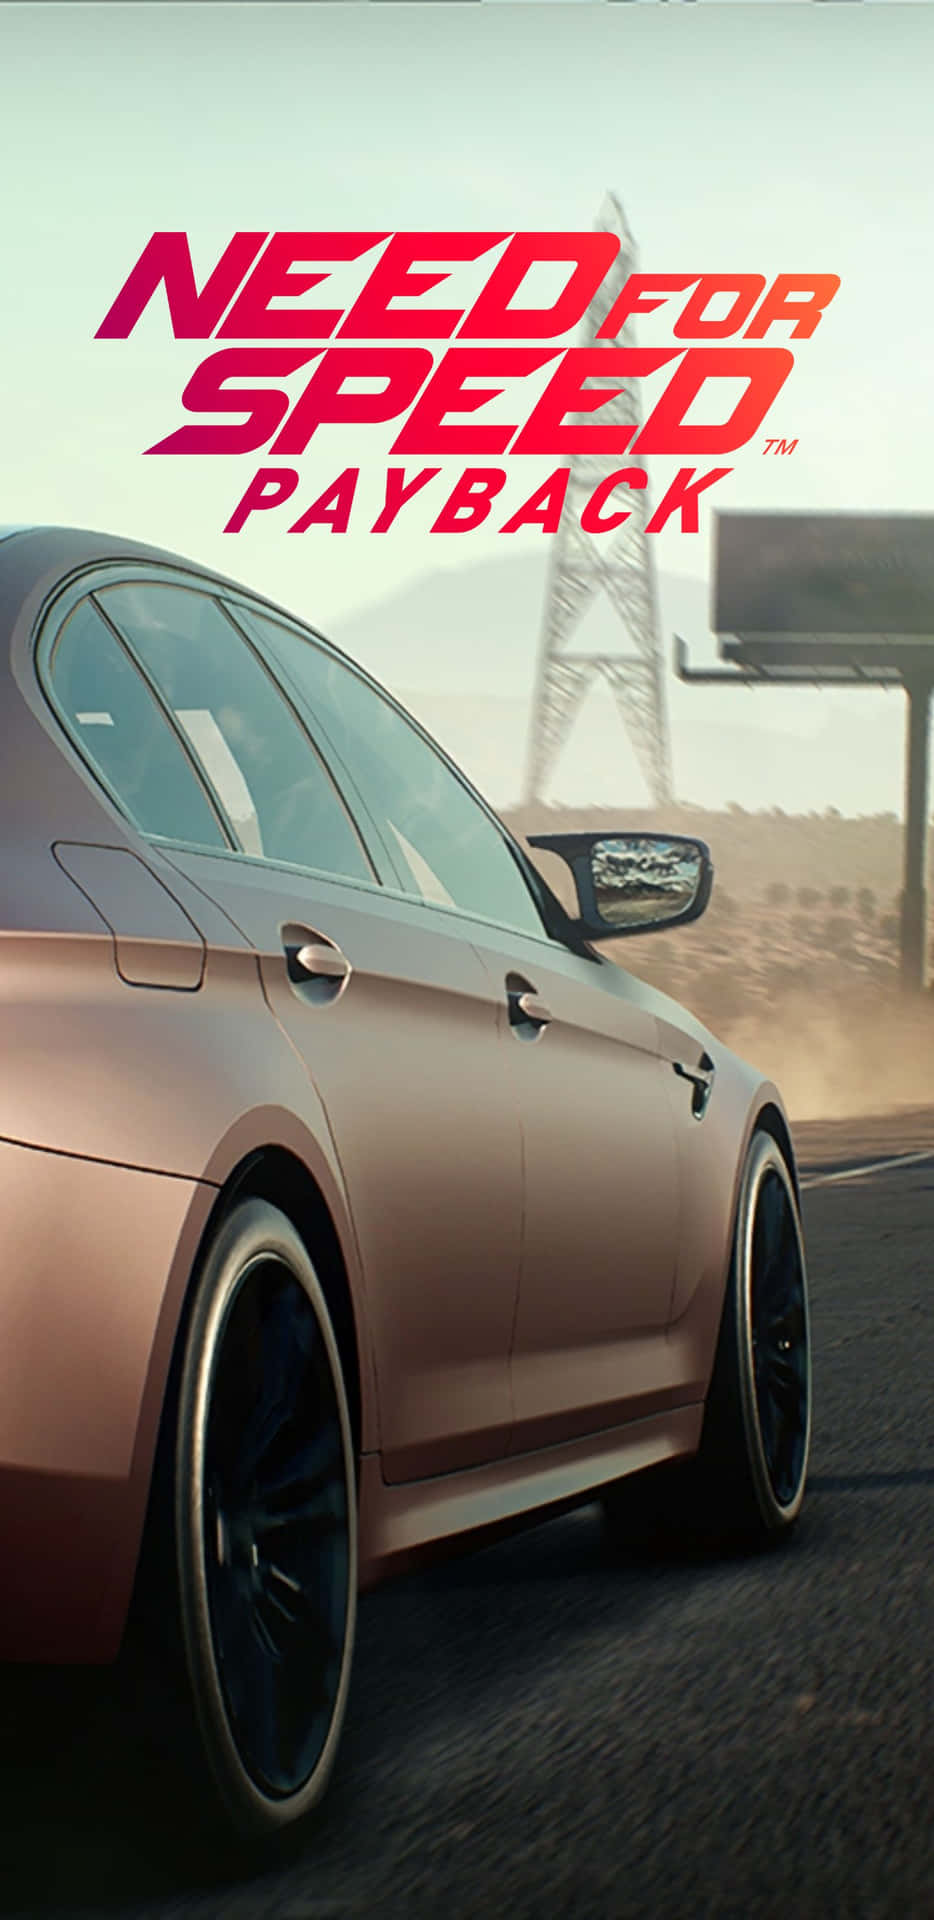 Sentitel'emozione Della Pista Da Corsa In Need For Speed Payback Su Pixel 3 Xl